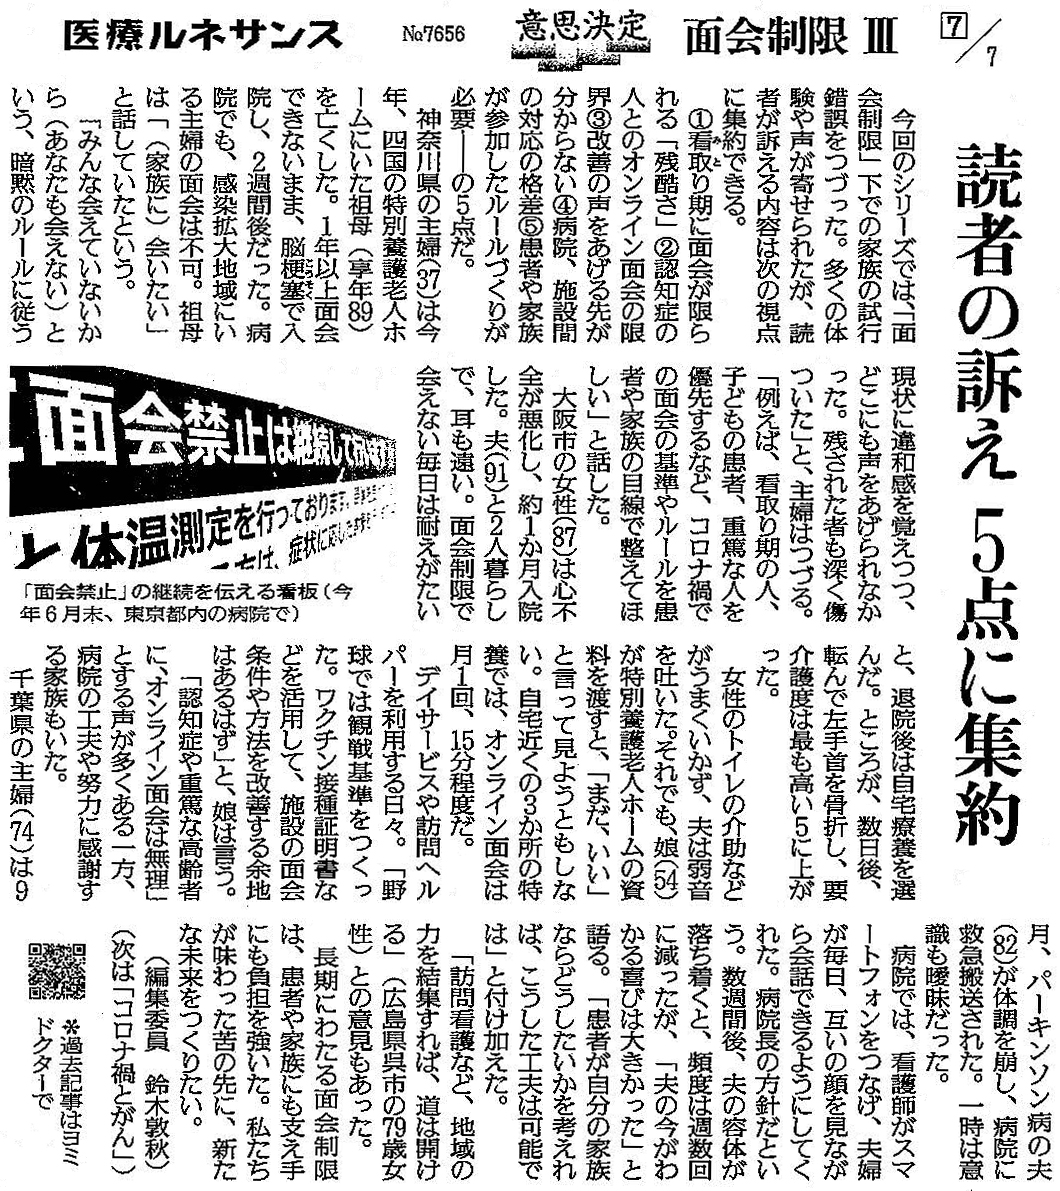 読売新聞 2021年11月26日掲載記事